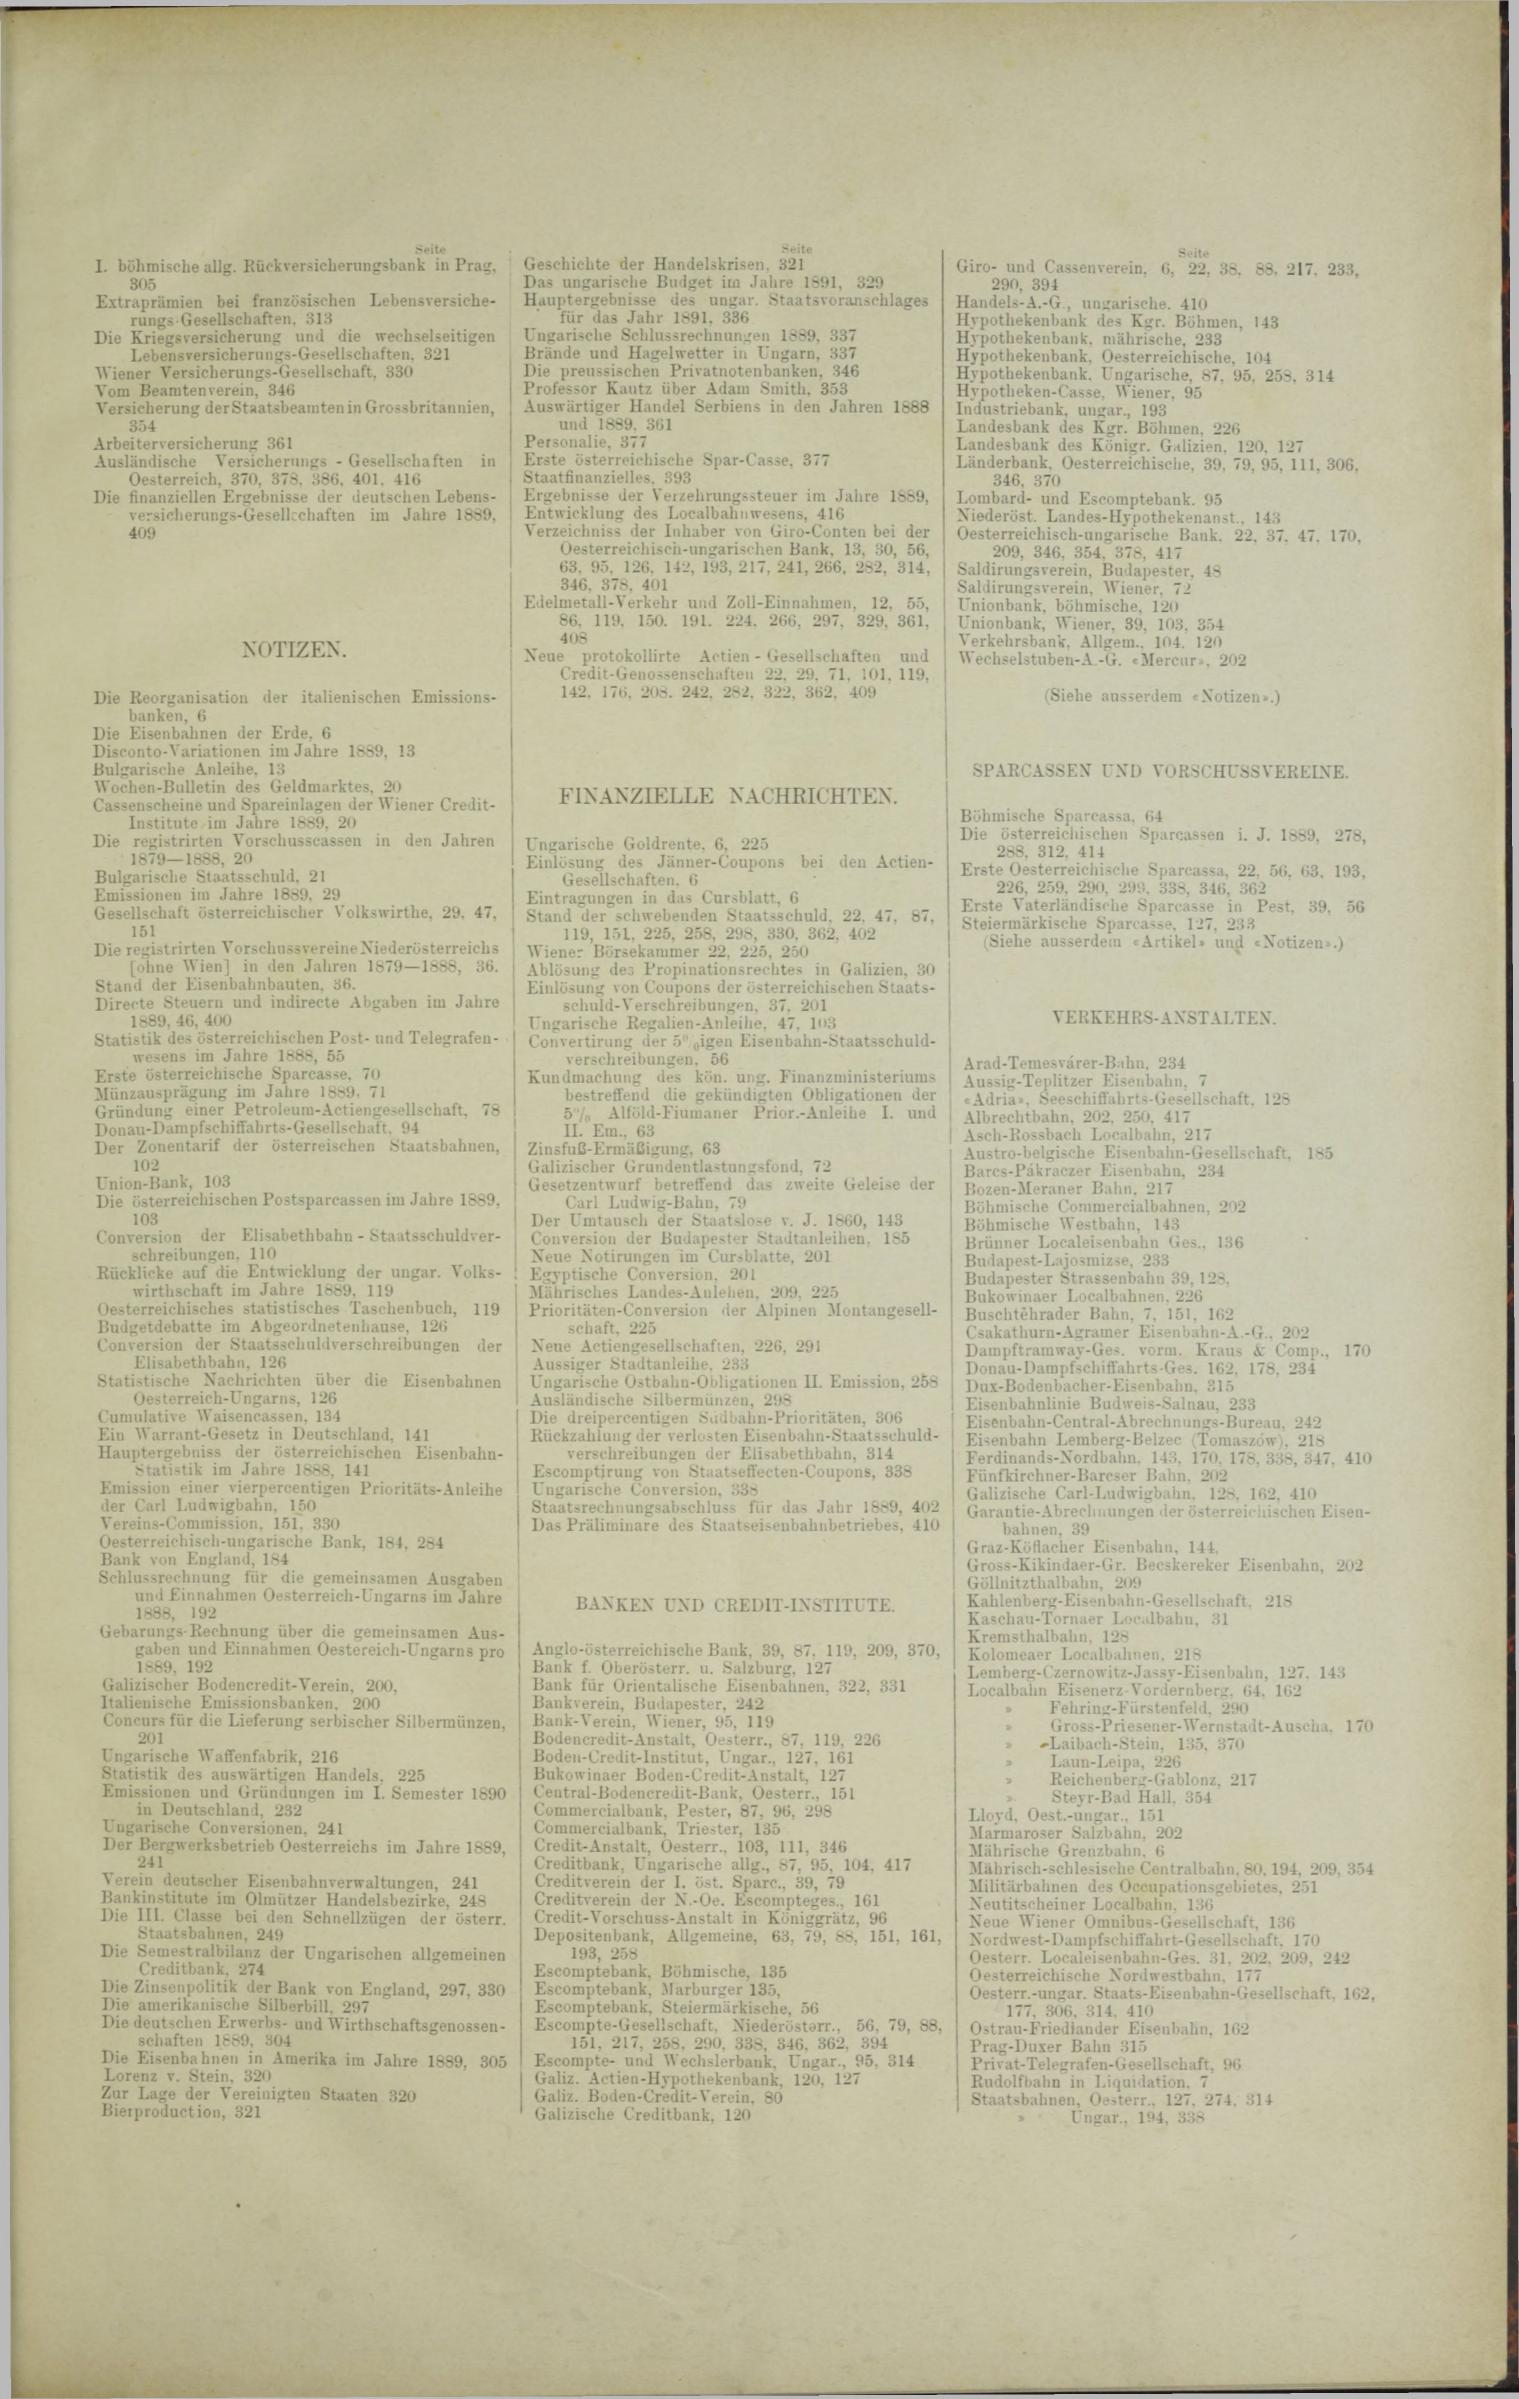 Der Tresor 16.01.1890 - Seite 11